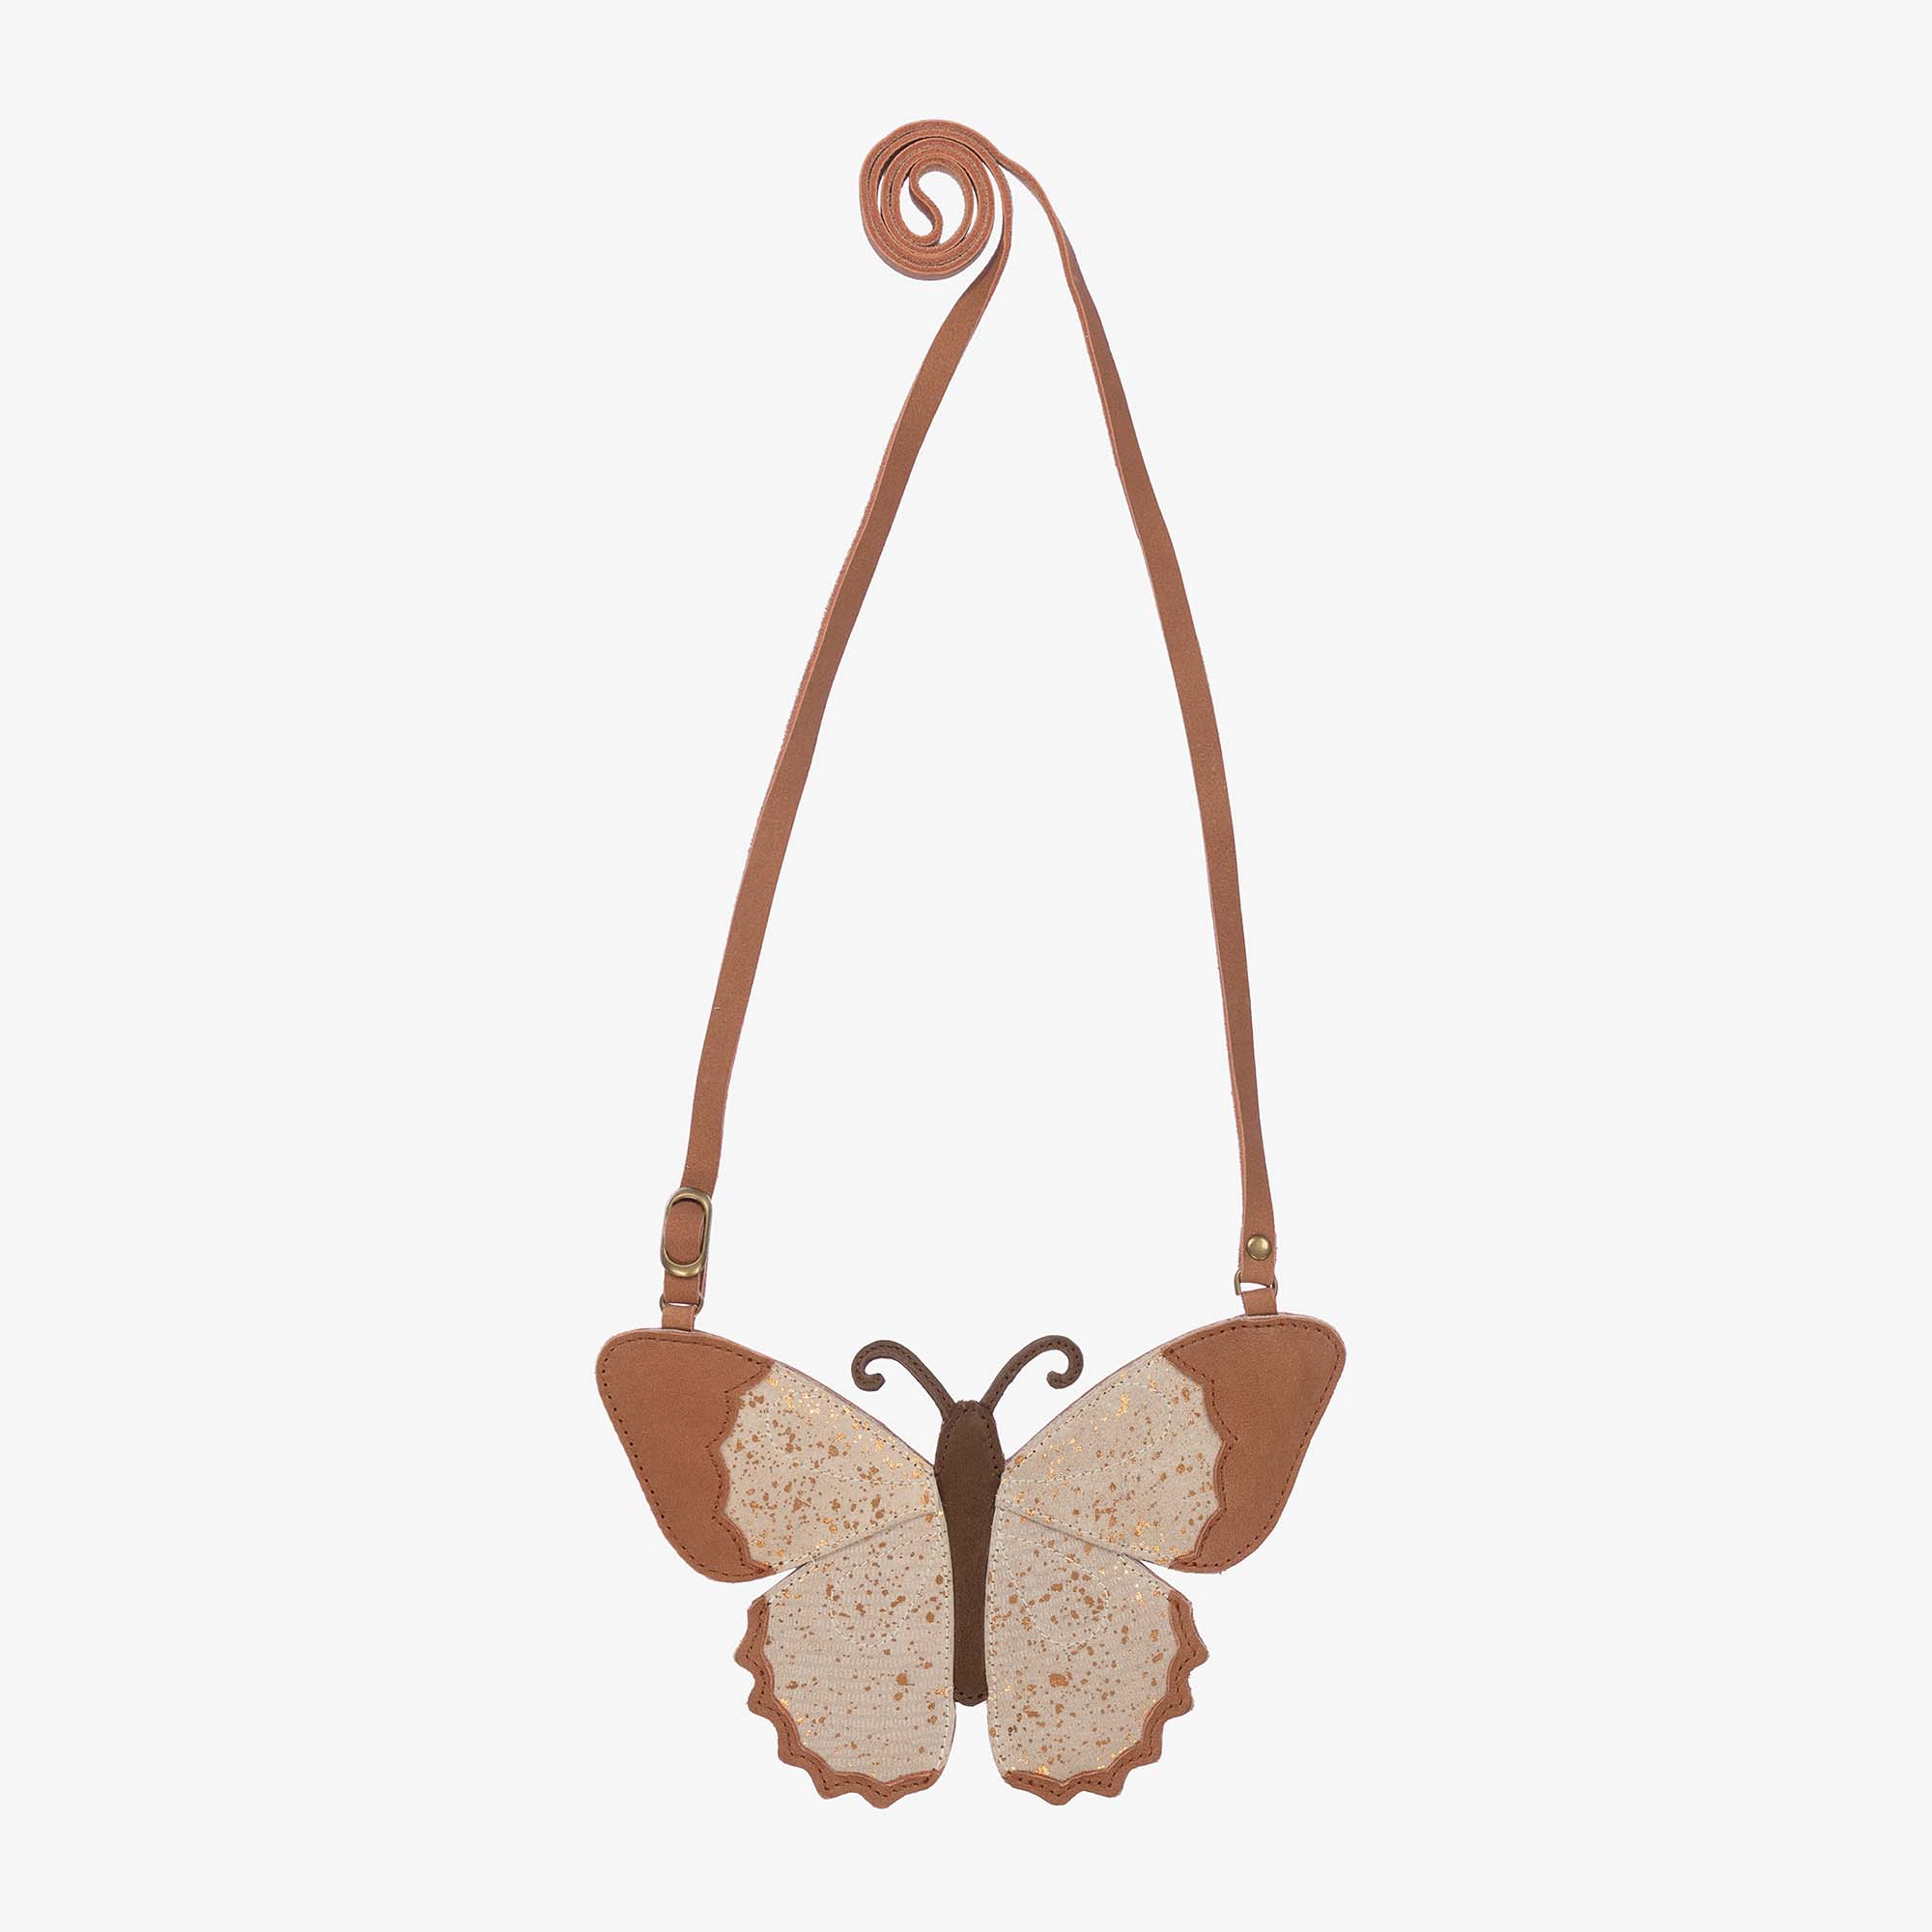 VRITRAZ Butterfly PU Leather Backpack Purse Shoulder Bag, Handbag for Women  Girls Ladies Pink 12 L Backpack Pink - Price in India | Flipkart.com